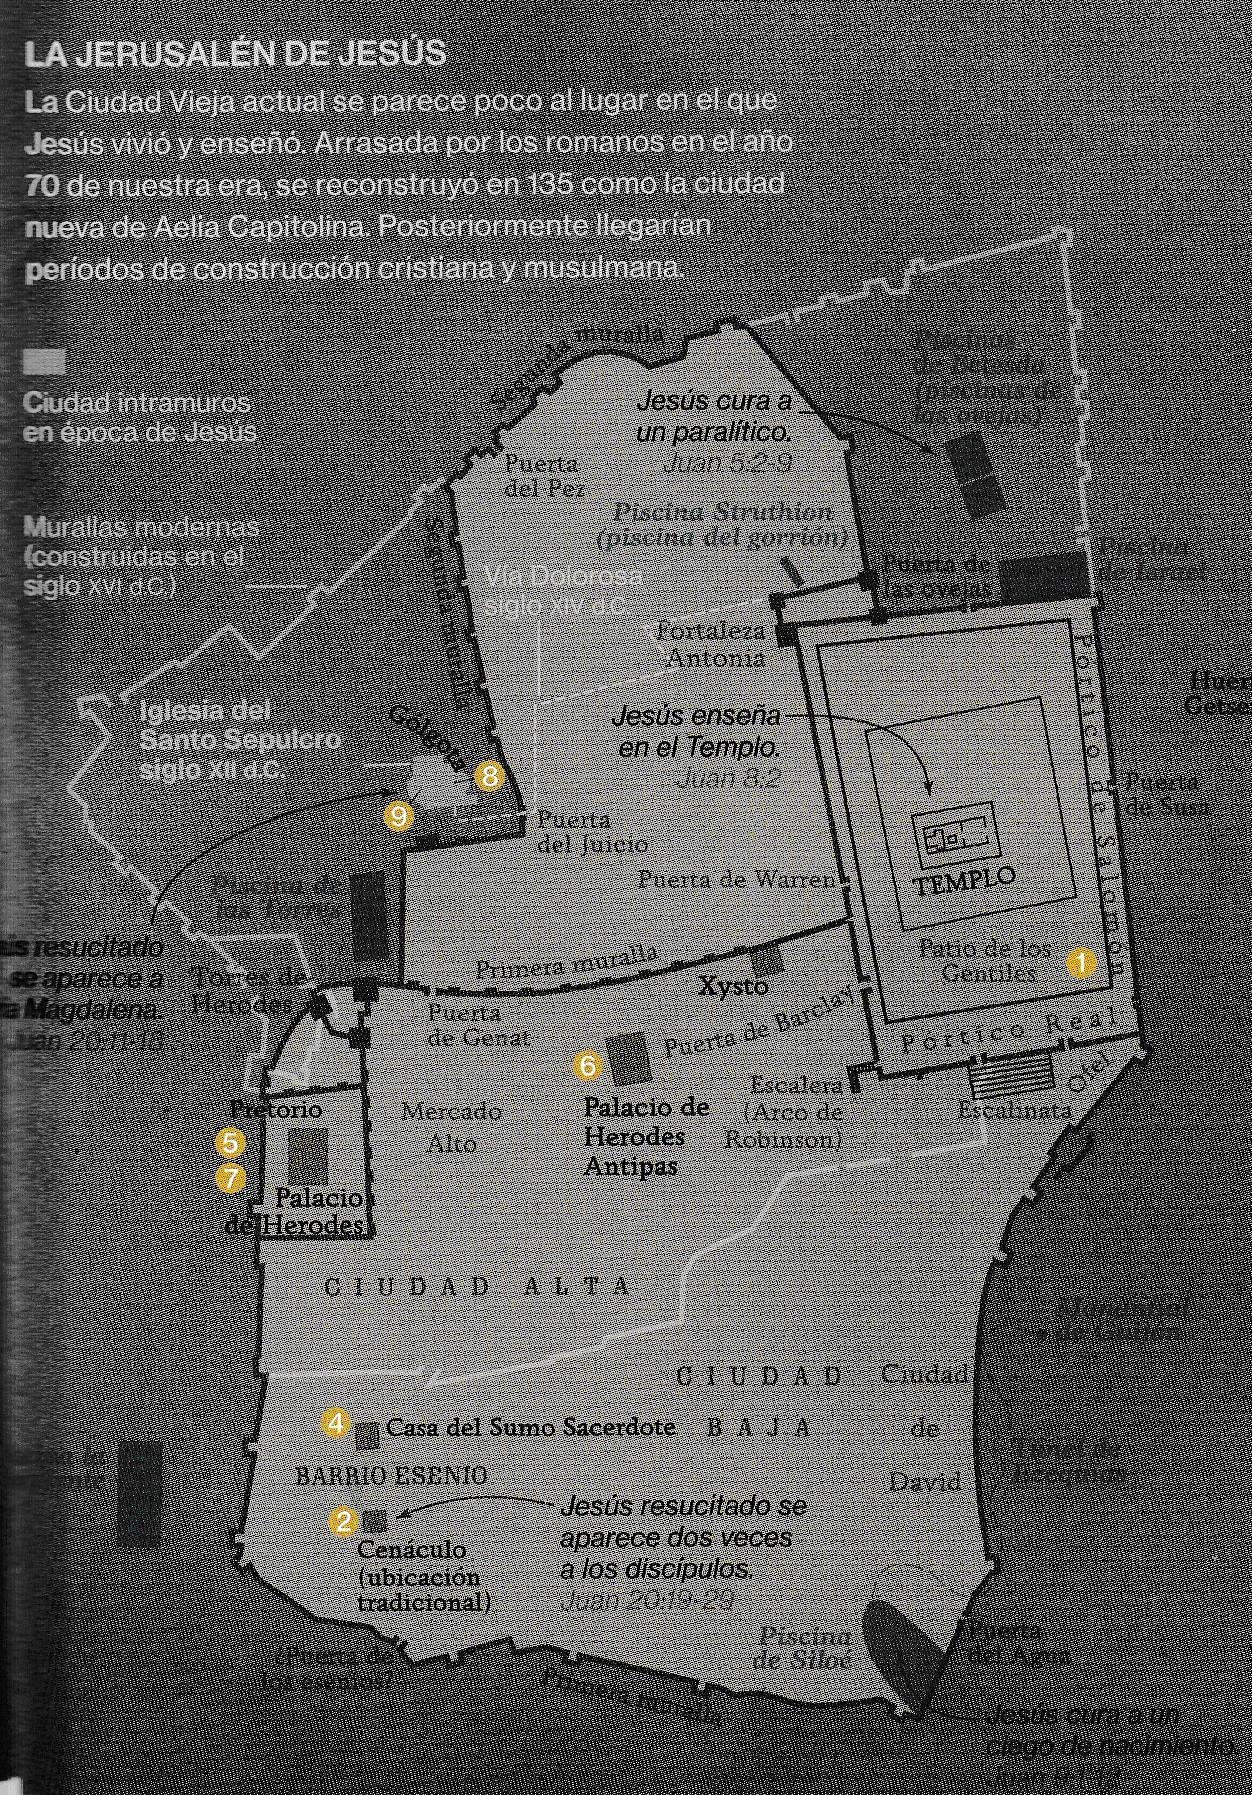 ¿Dónde estaba el Gólgota? Plano de Jerusalén de National Geographhic, Diciembre 2.017.